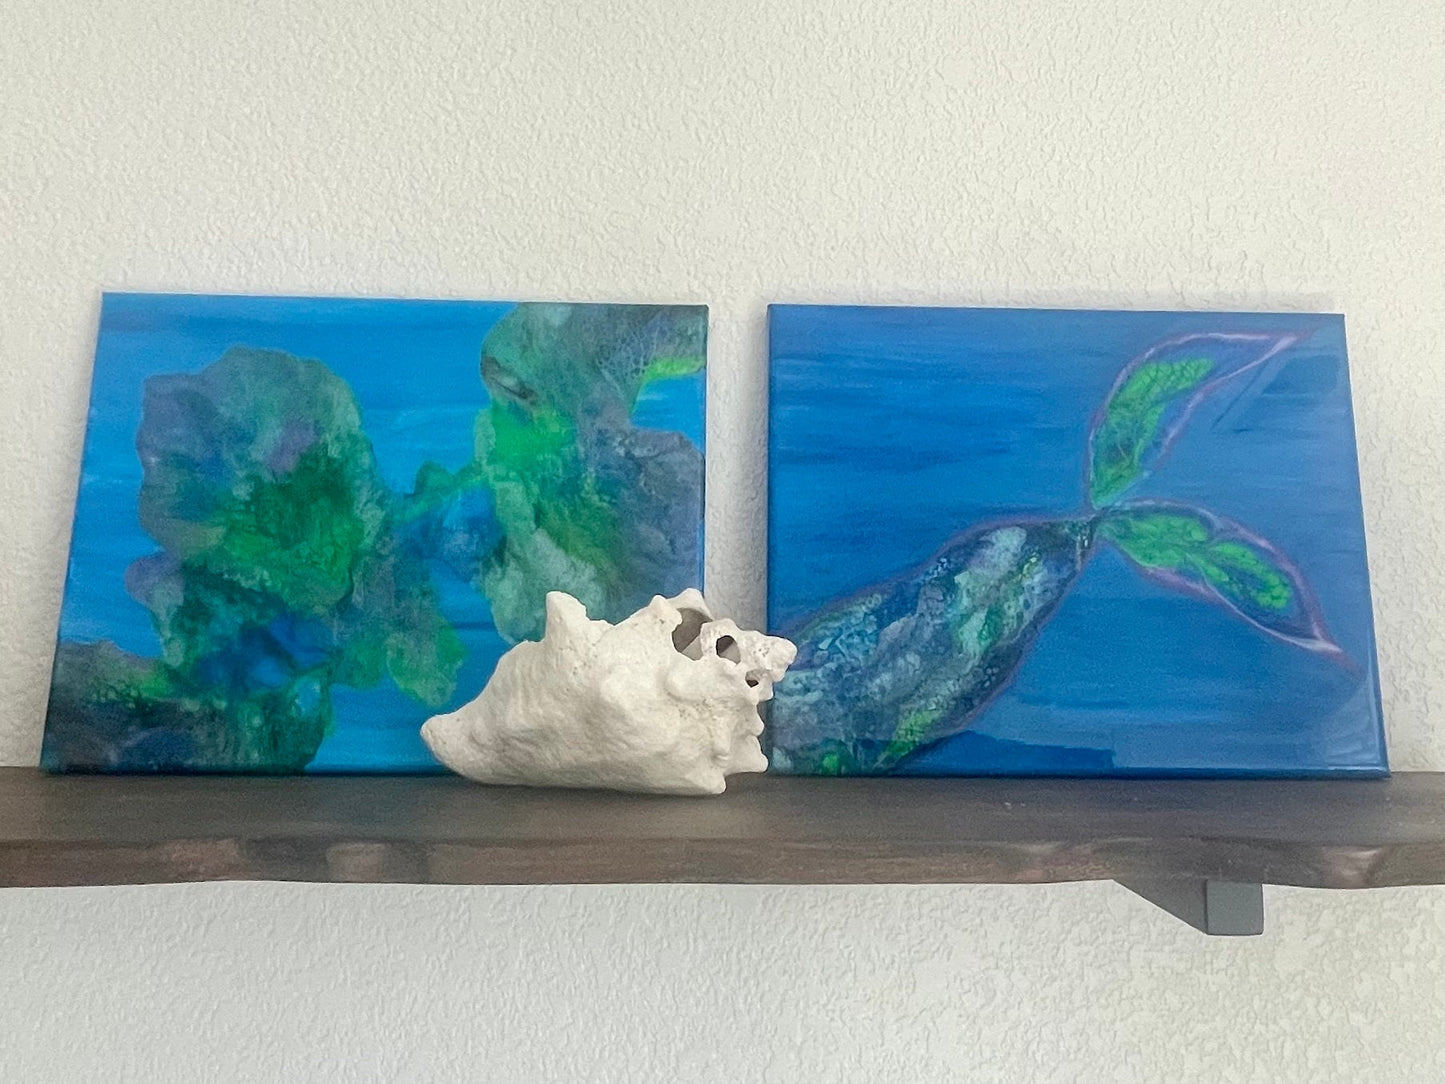 Mermaid Tail Painting Ocean Scene on 11x14 Canvas, "Under the Sea" Tropical Wall Art, Fluid Art Home Decor, Acrylic Paint Pour